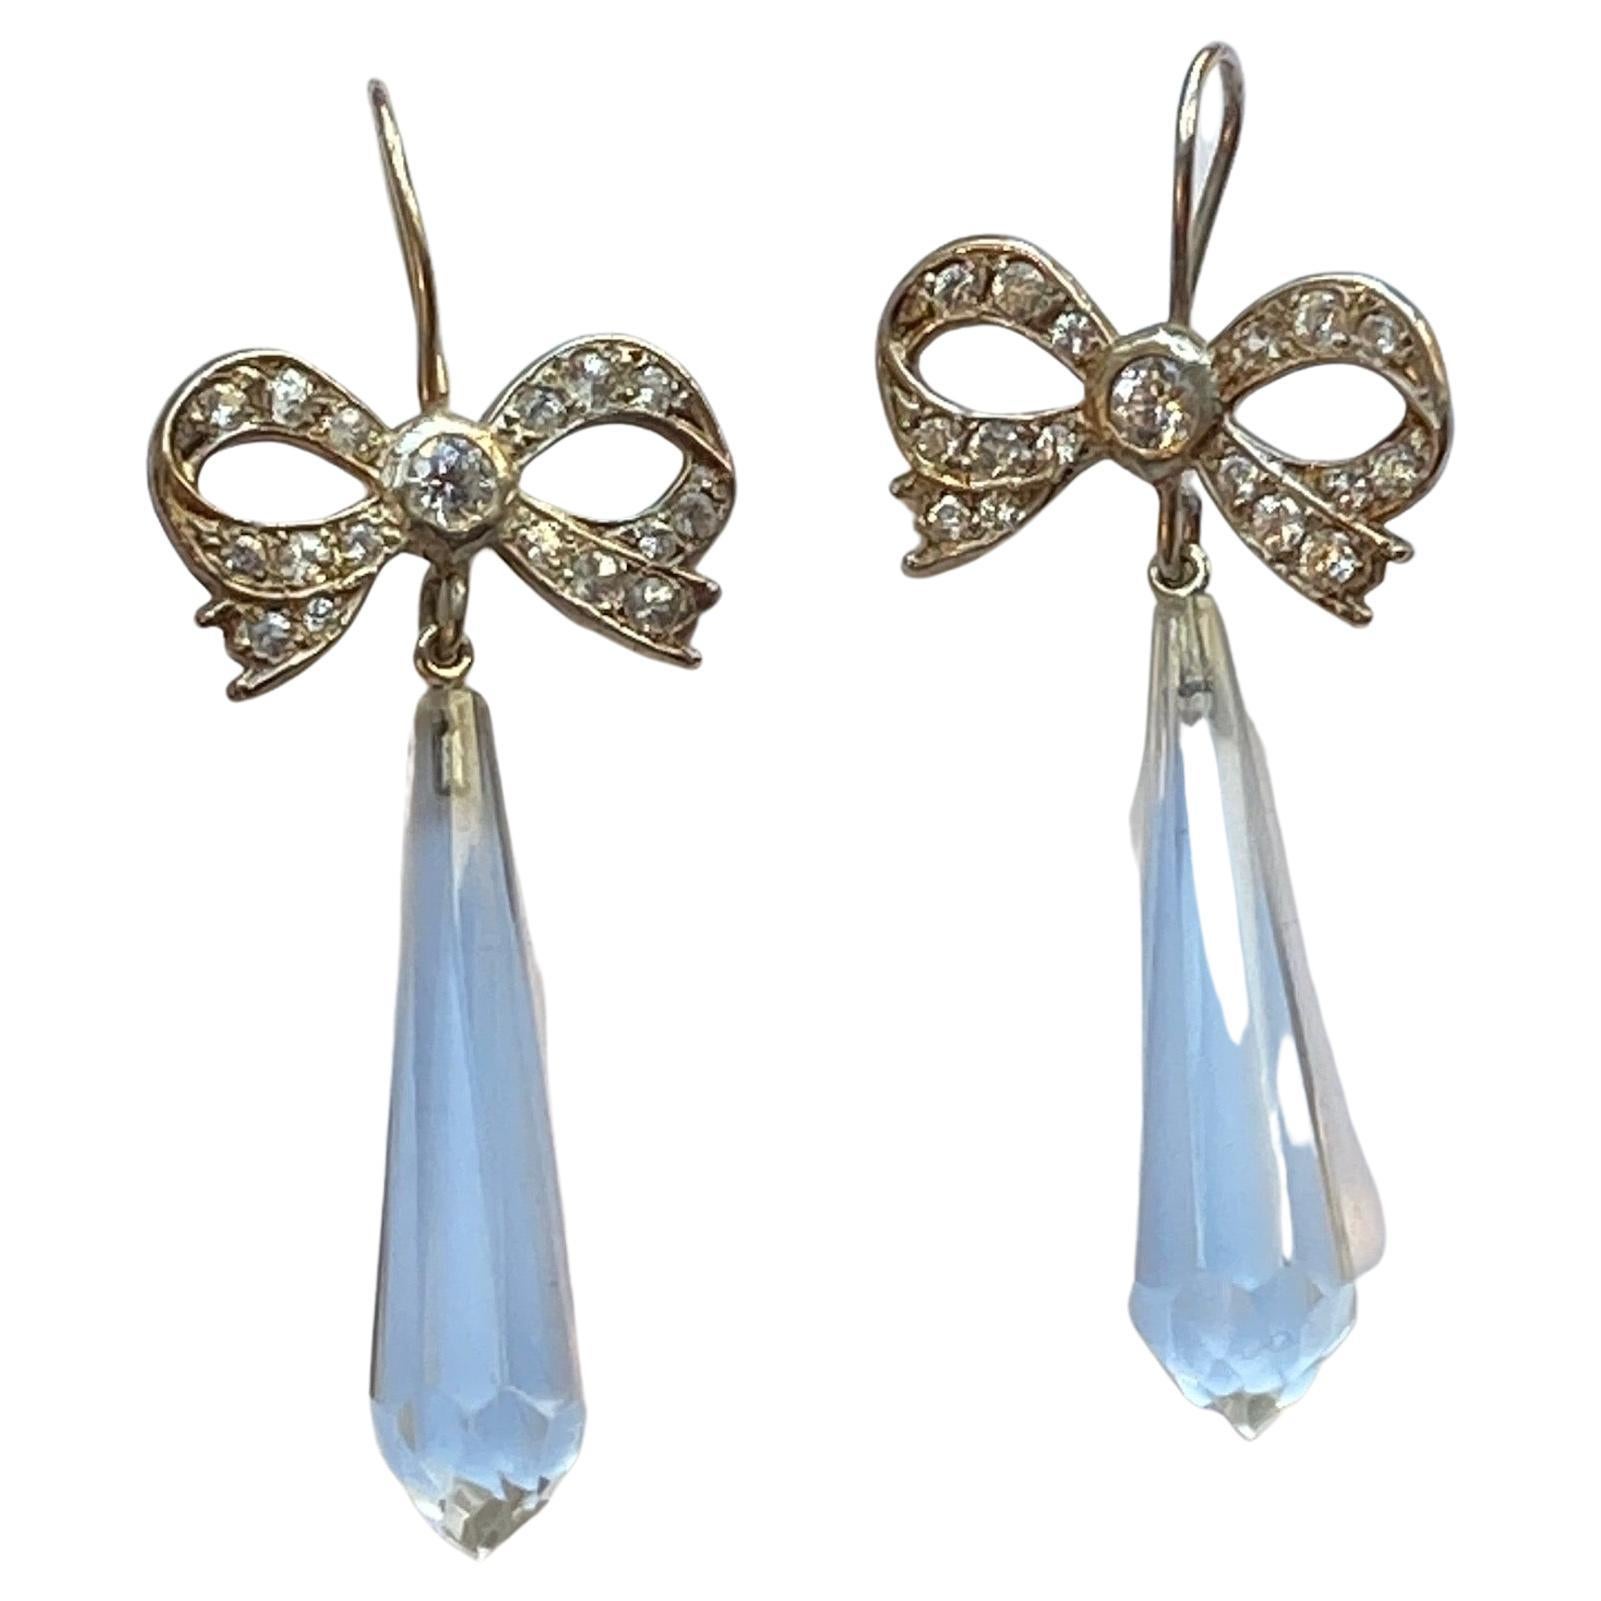 Long & Elegant Rock Crystal Earrings with Swarovksi Crystals 